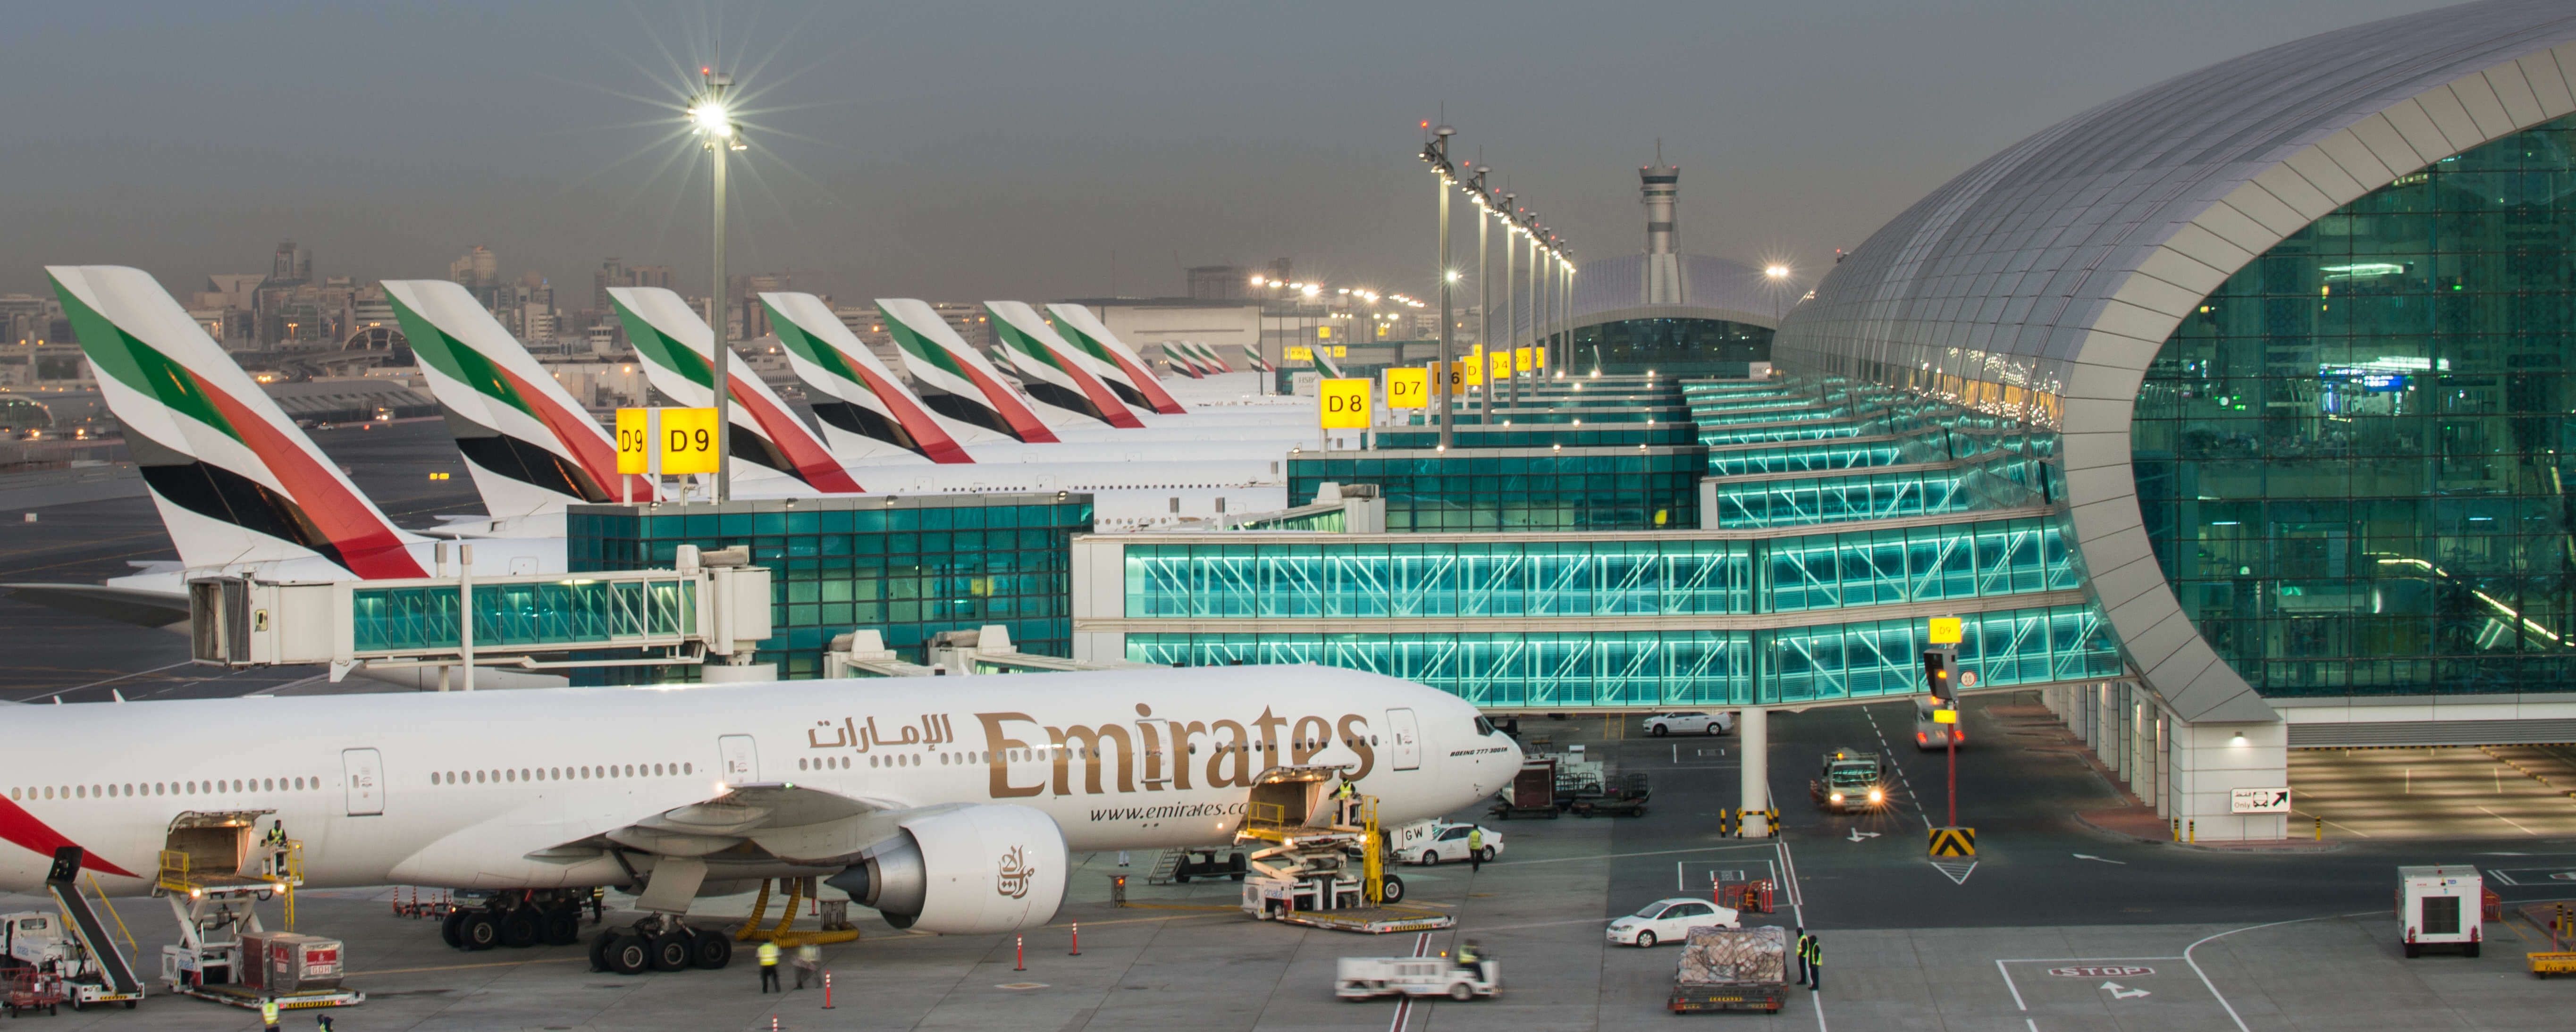 Emirates aircraft at Dubai International Airport